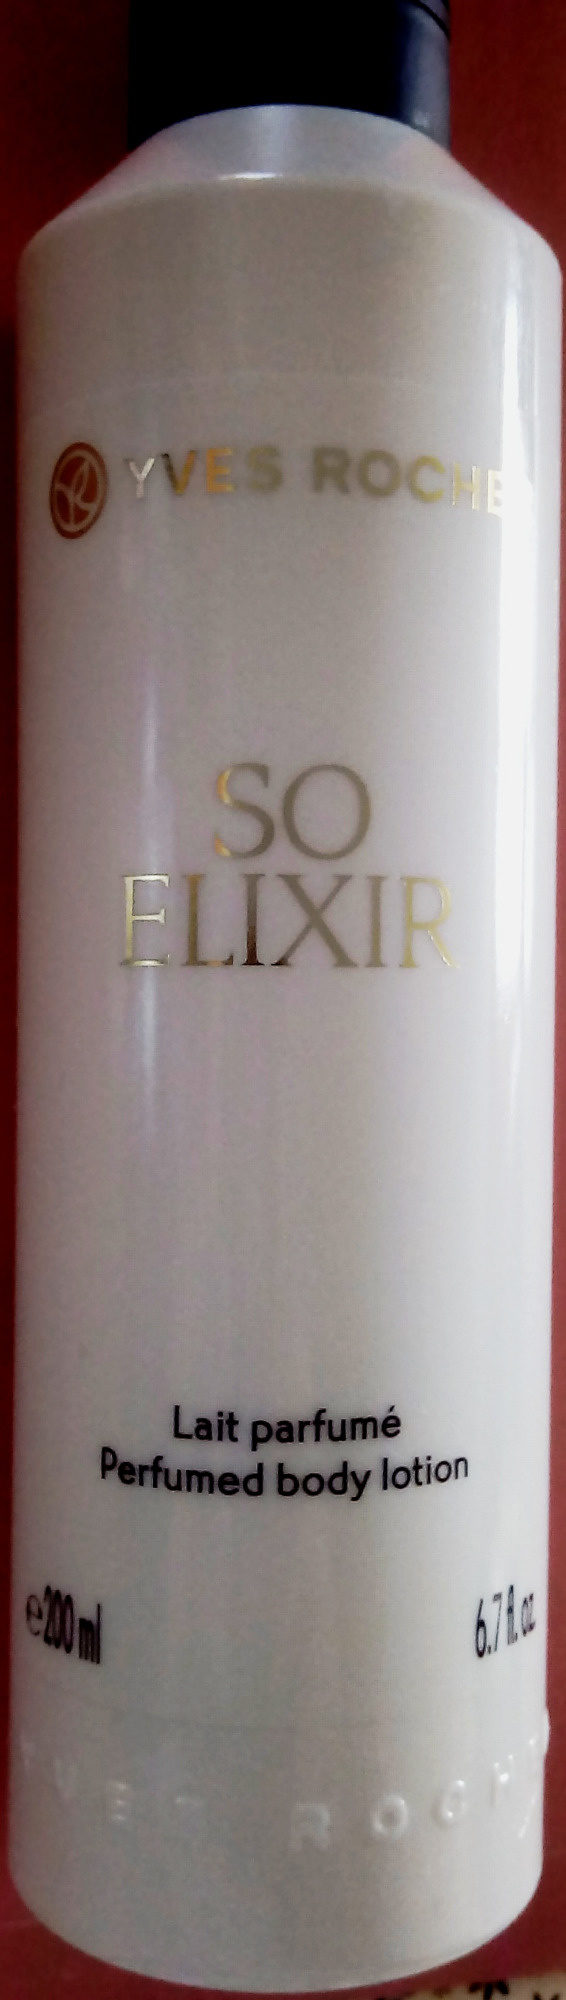 Lait parfumé So Elixir - Product - fr